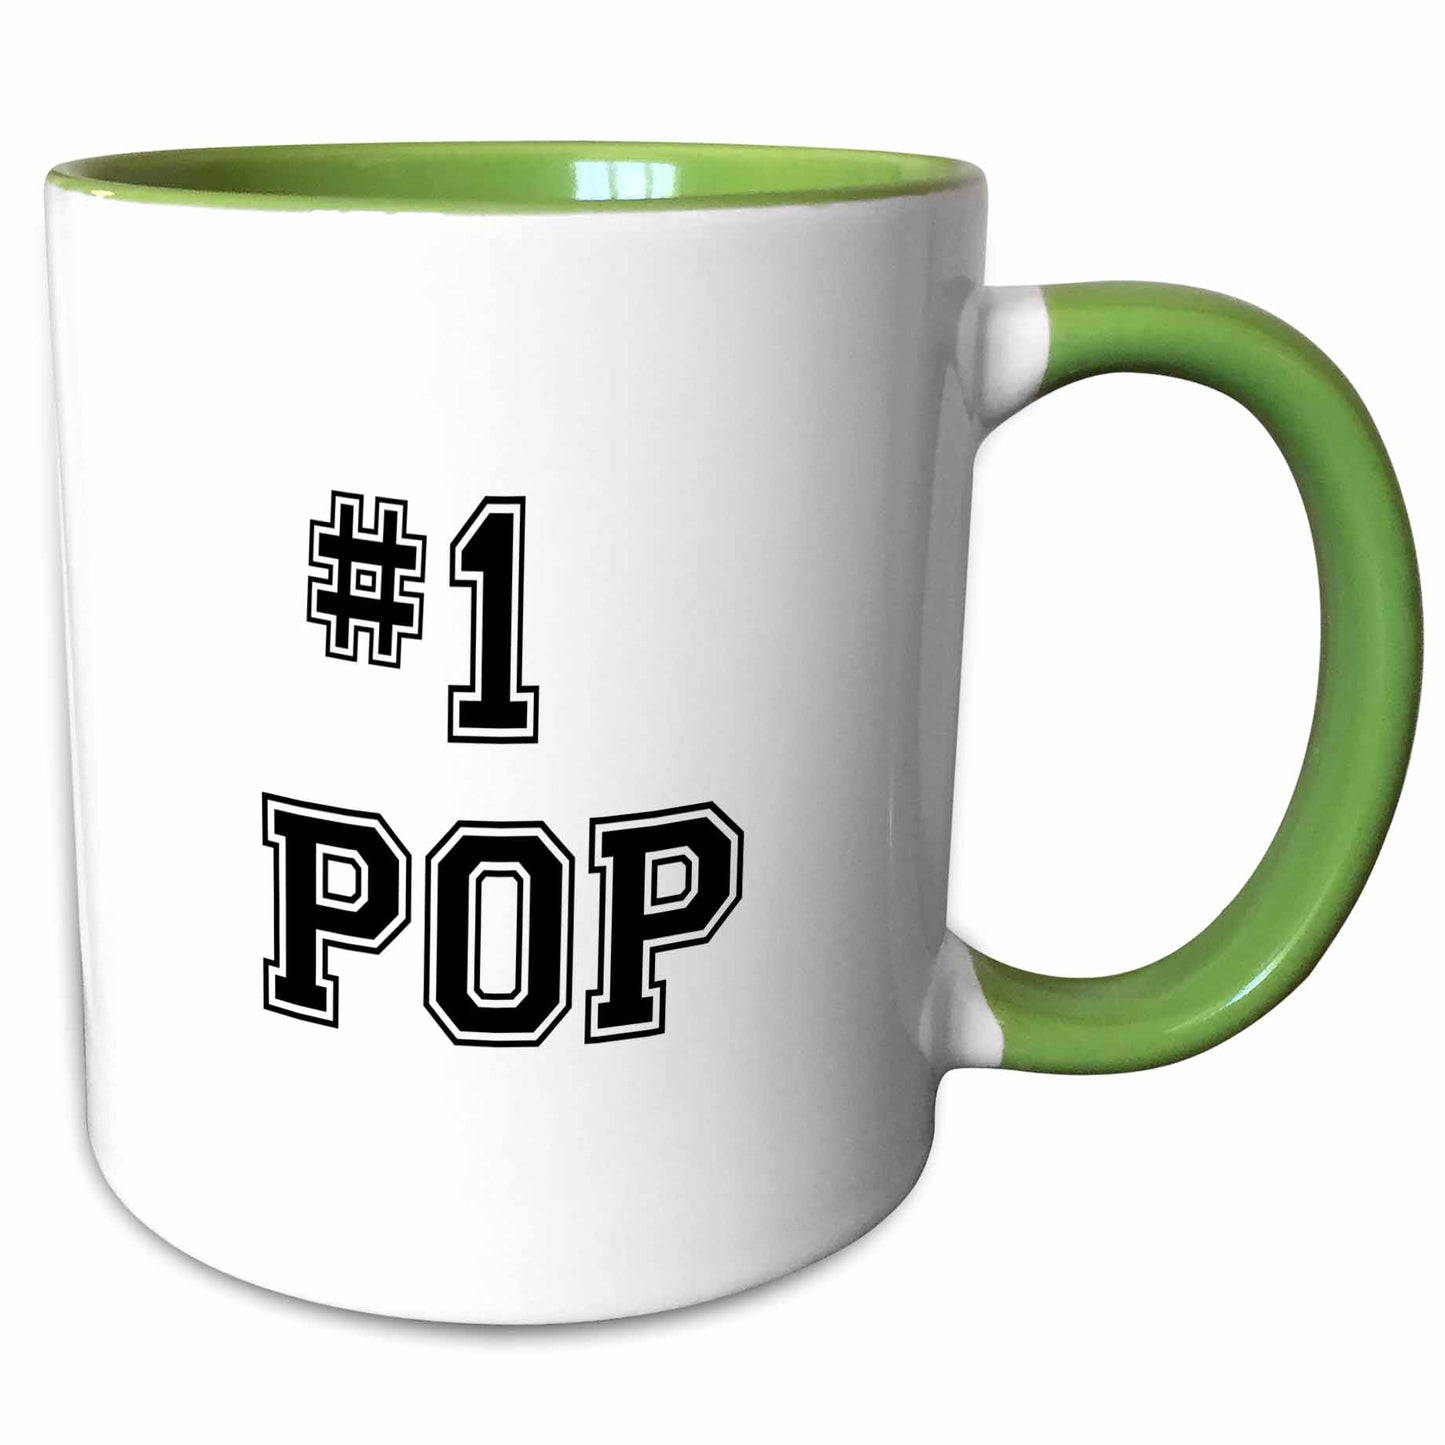 image of 11oz Two-Tone Green Mug